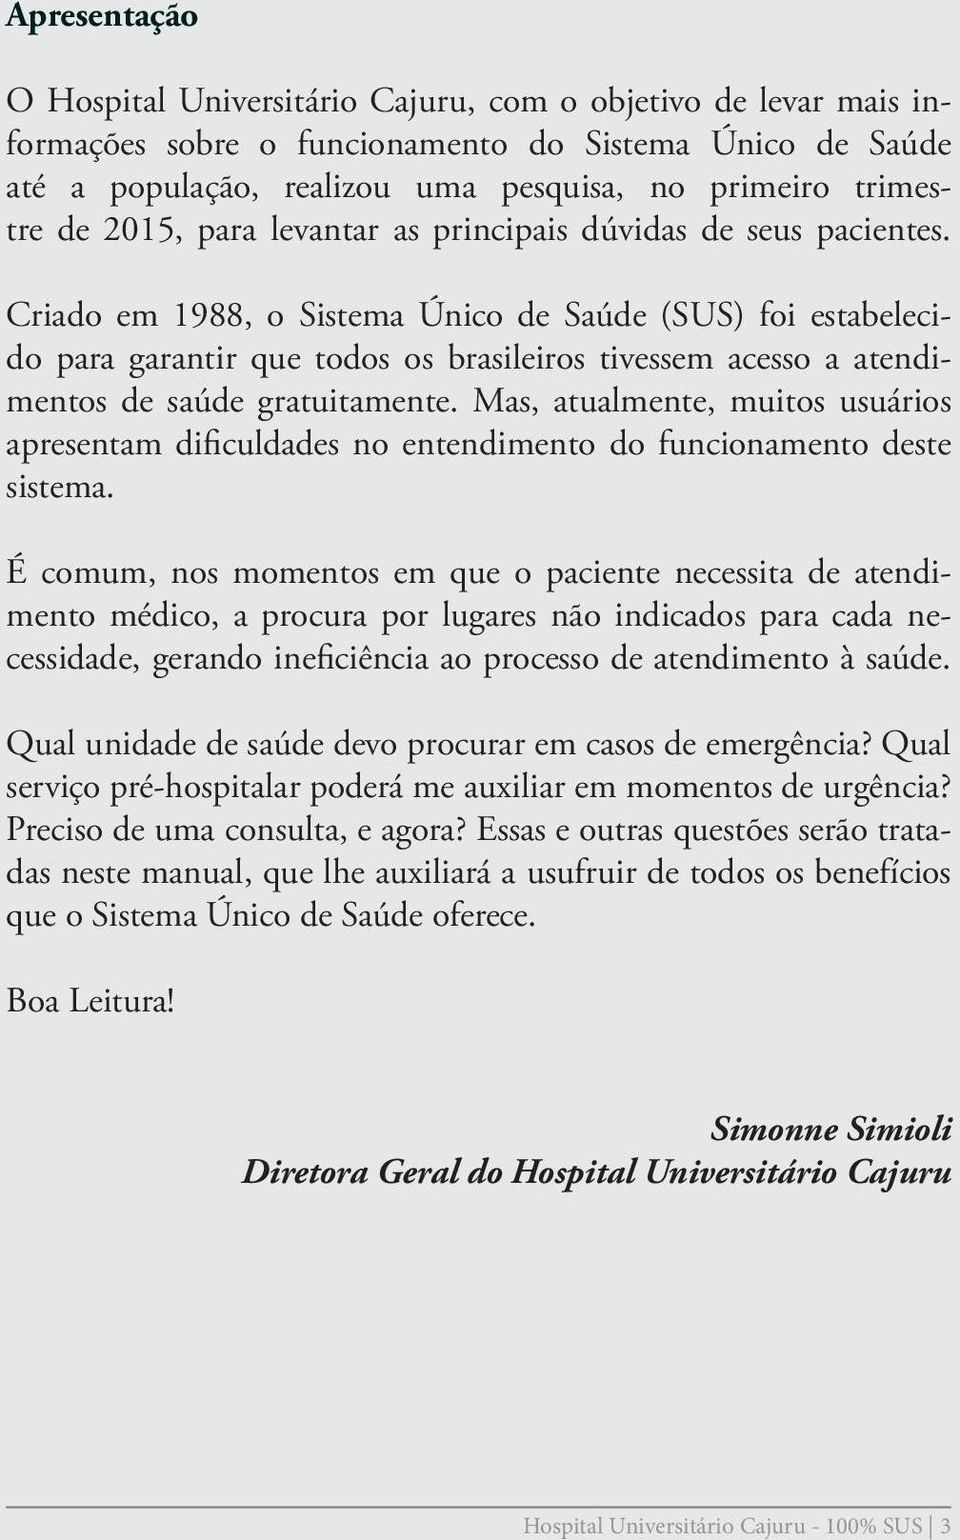 Criado em 1988, o Sistema Único de Saúde (SUS) foi estabelecido para garantir que todos os brasileiros tivessem acesso a atendimentos de saúde gratuitamente.